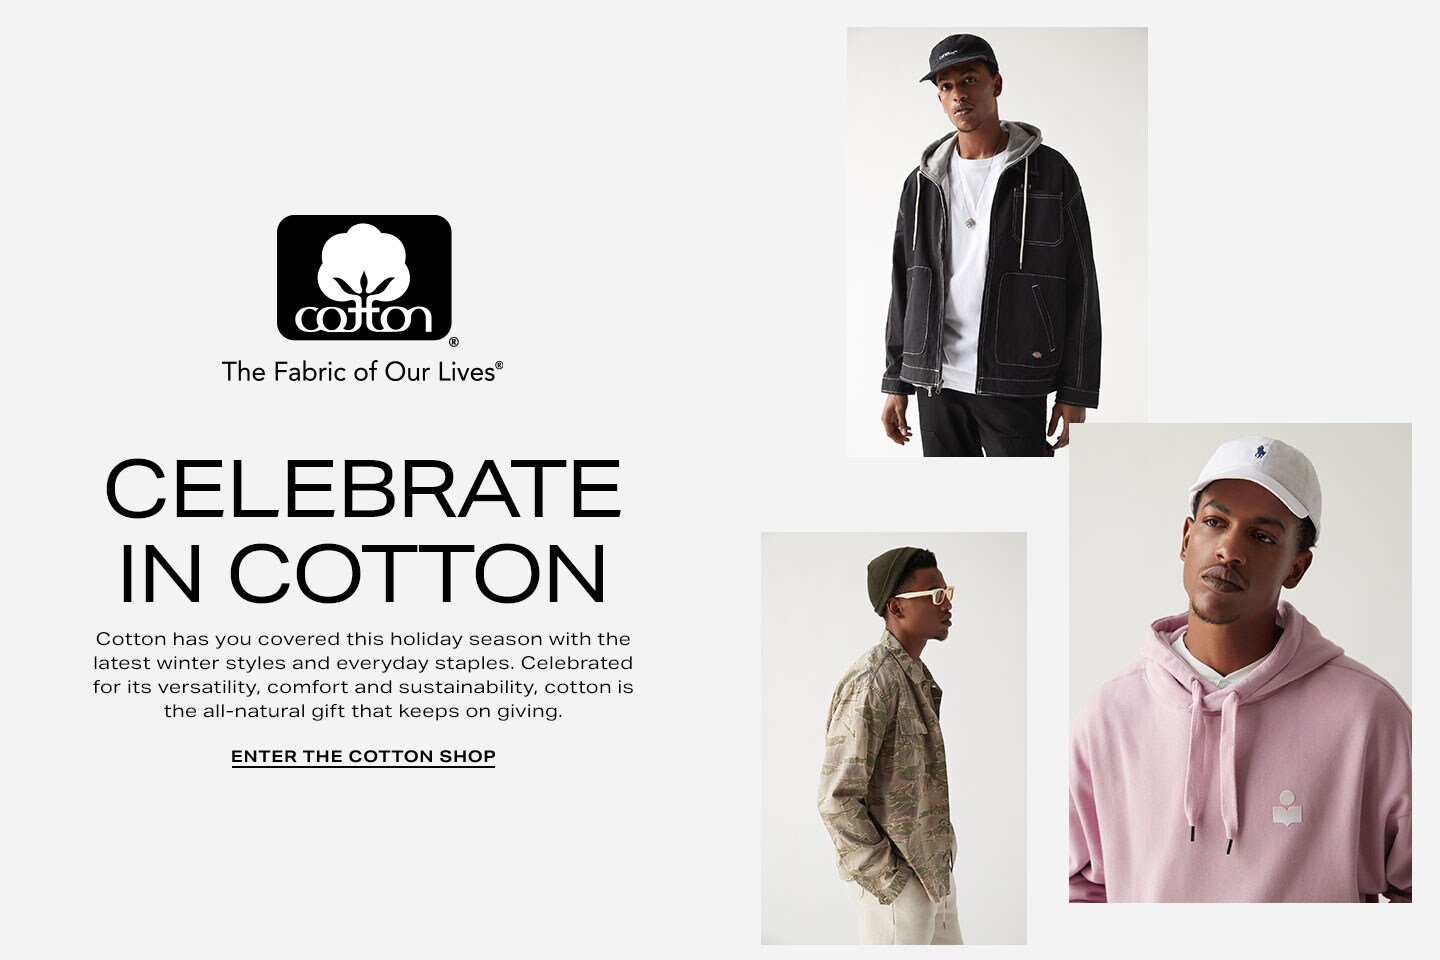 Cotton Одежда Интернет Магазин Официальный Сайт